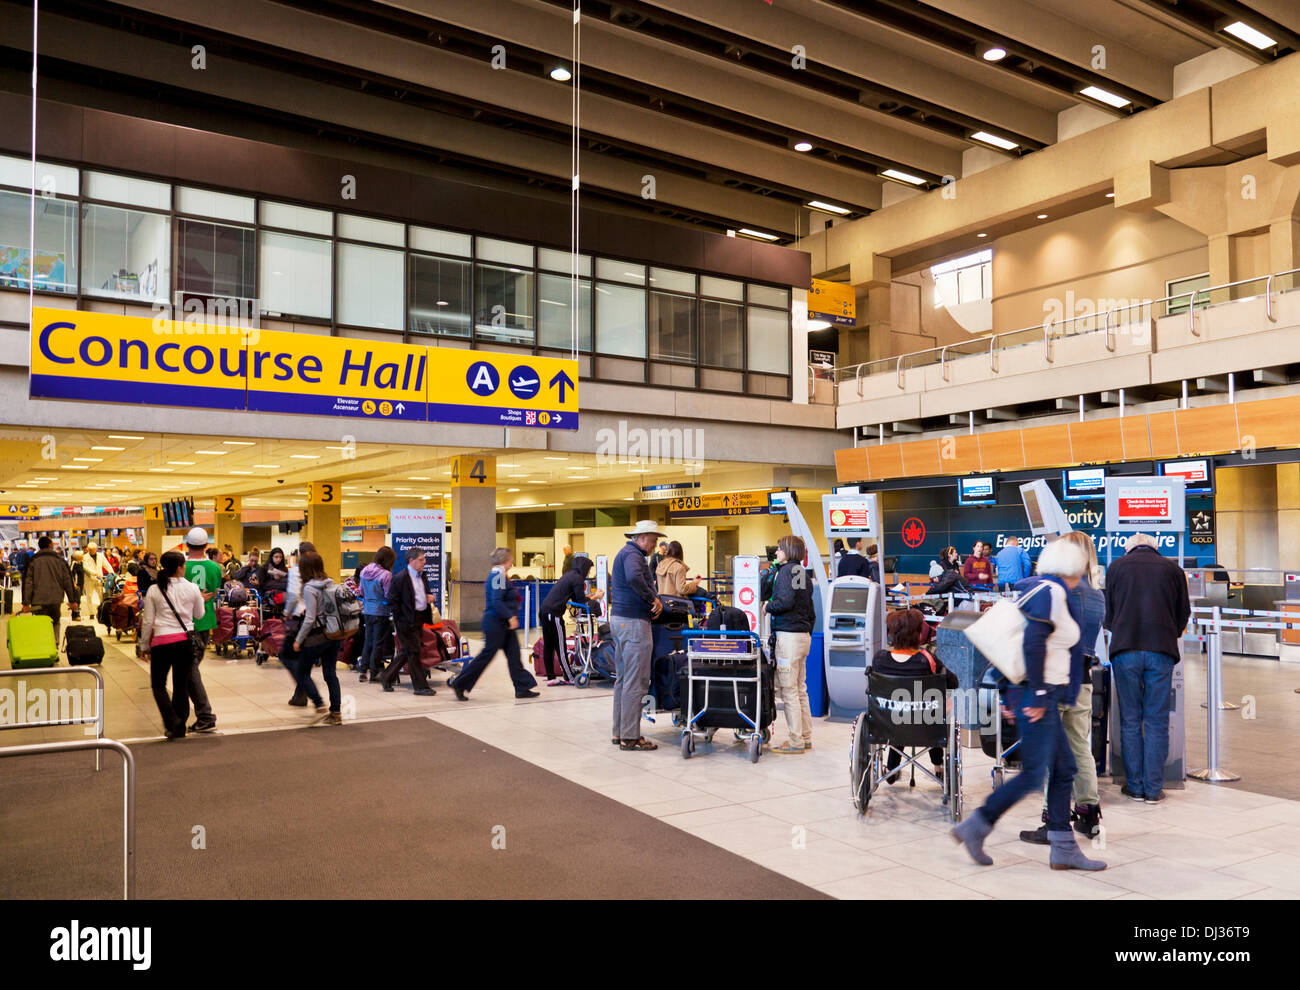 El concourse hall hall de salidas del aeropuerto internacional de Calgary Calgary, Alberta, Canadá Foto de stock